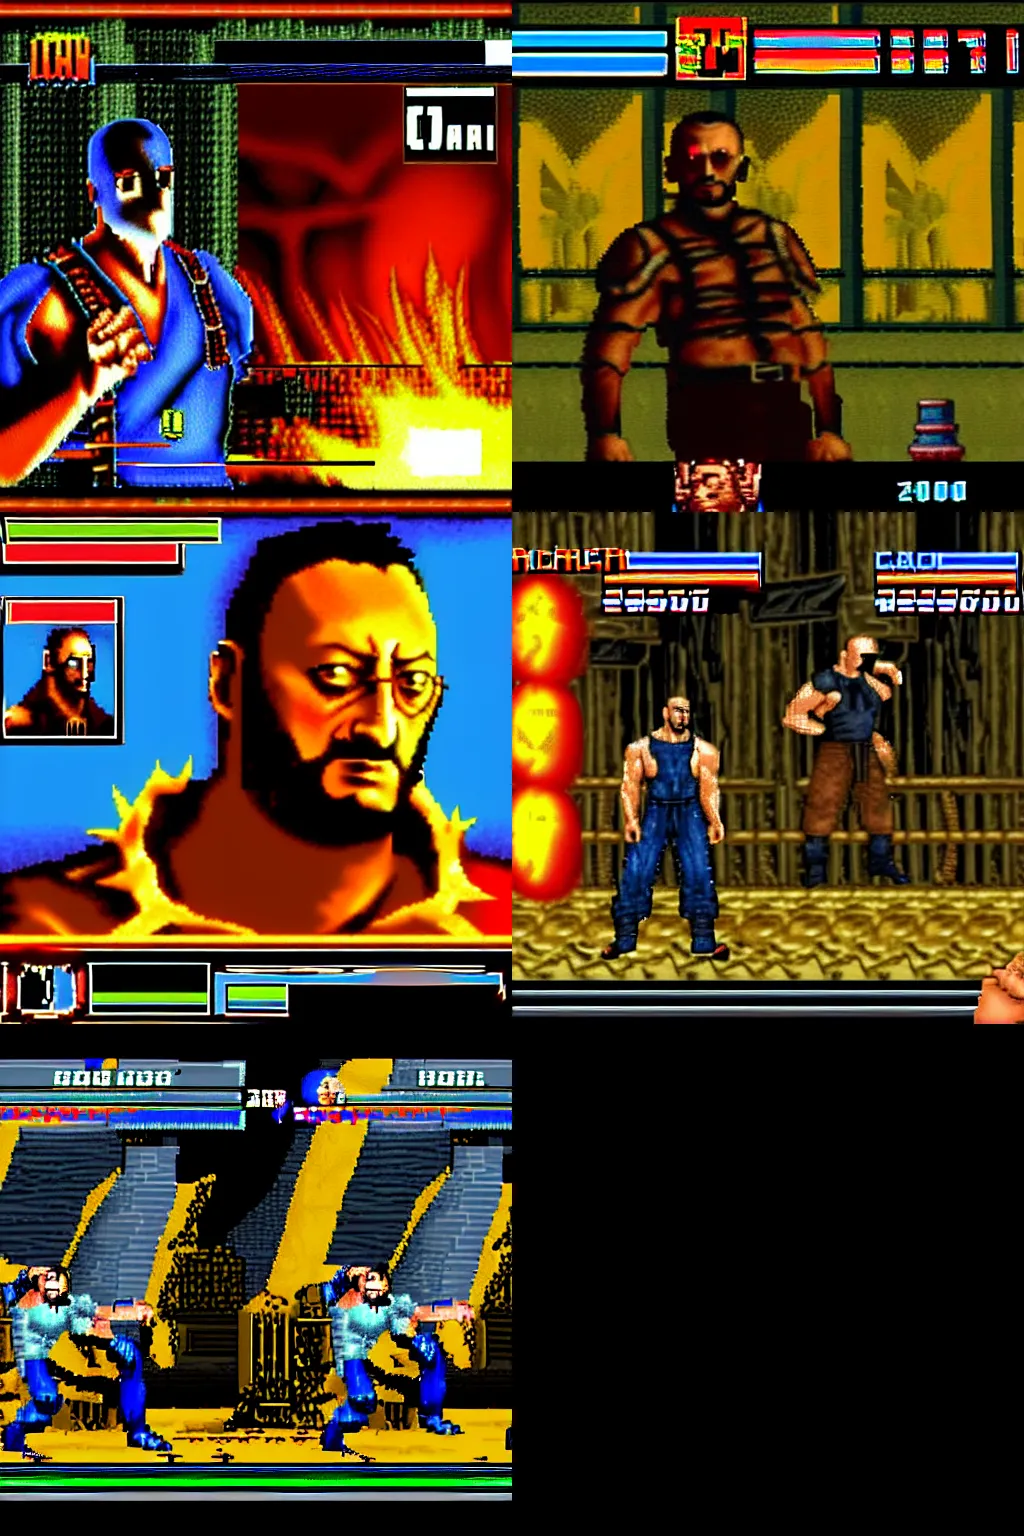 Prompt: jean reno in mortal kombat 2 arcade game,screenshot